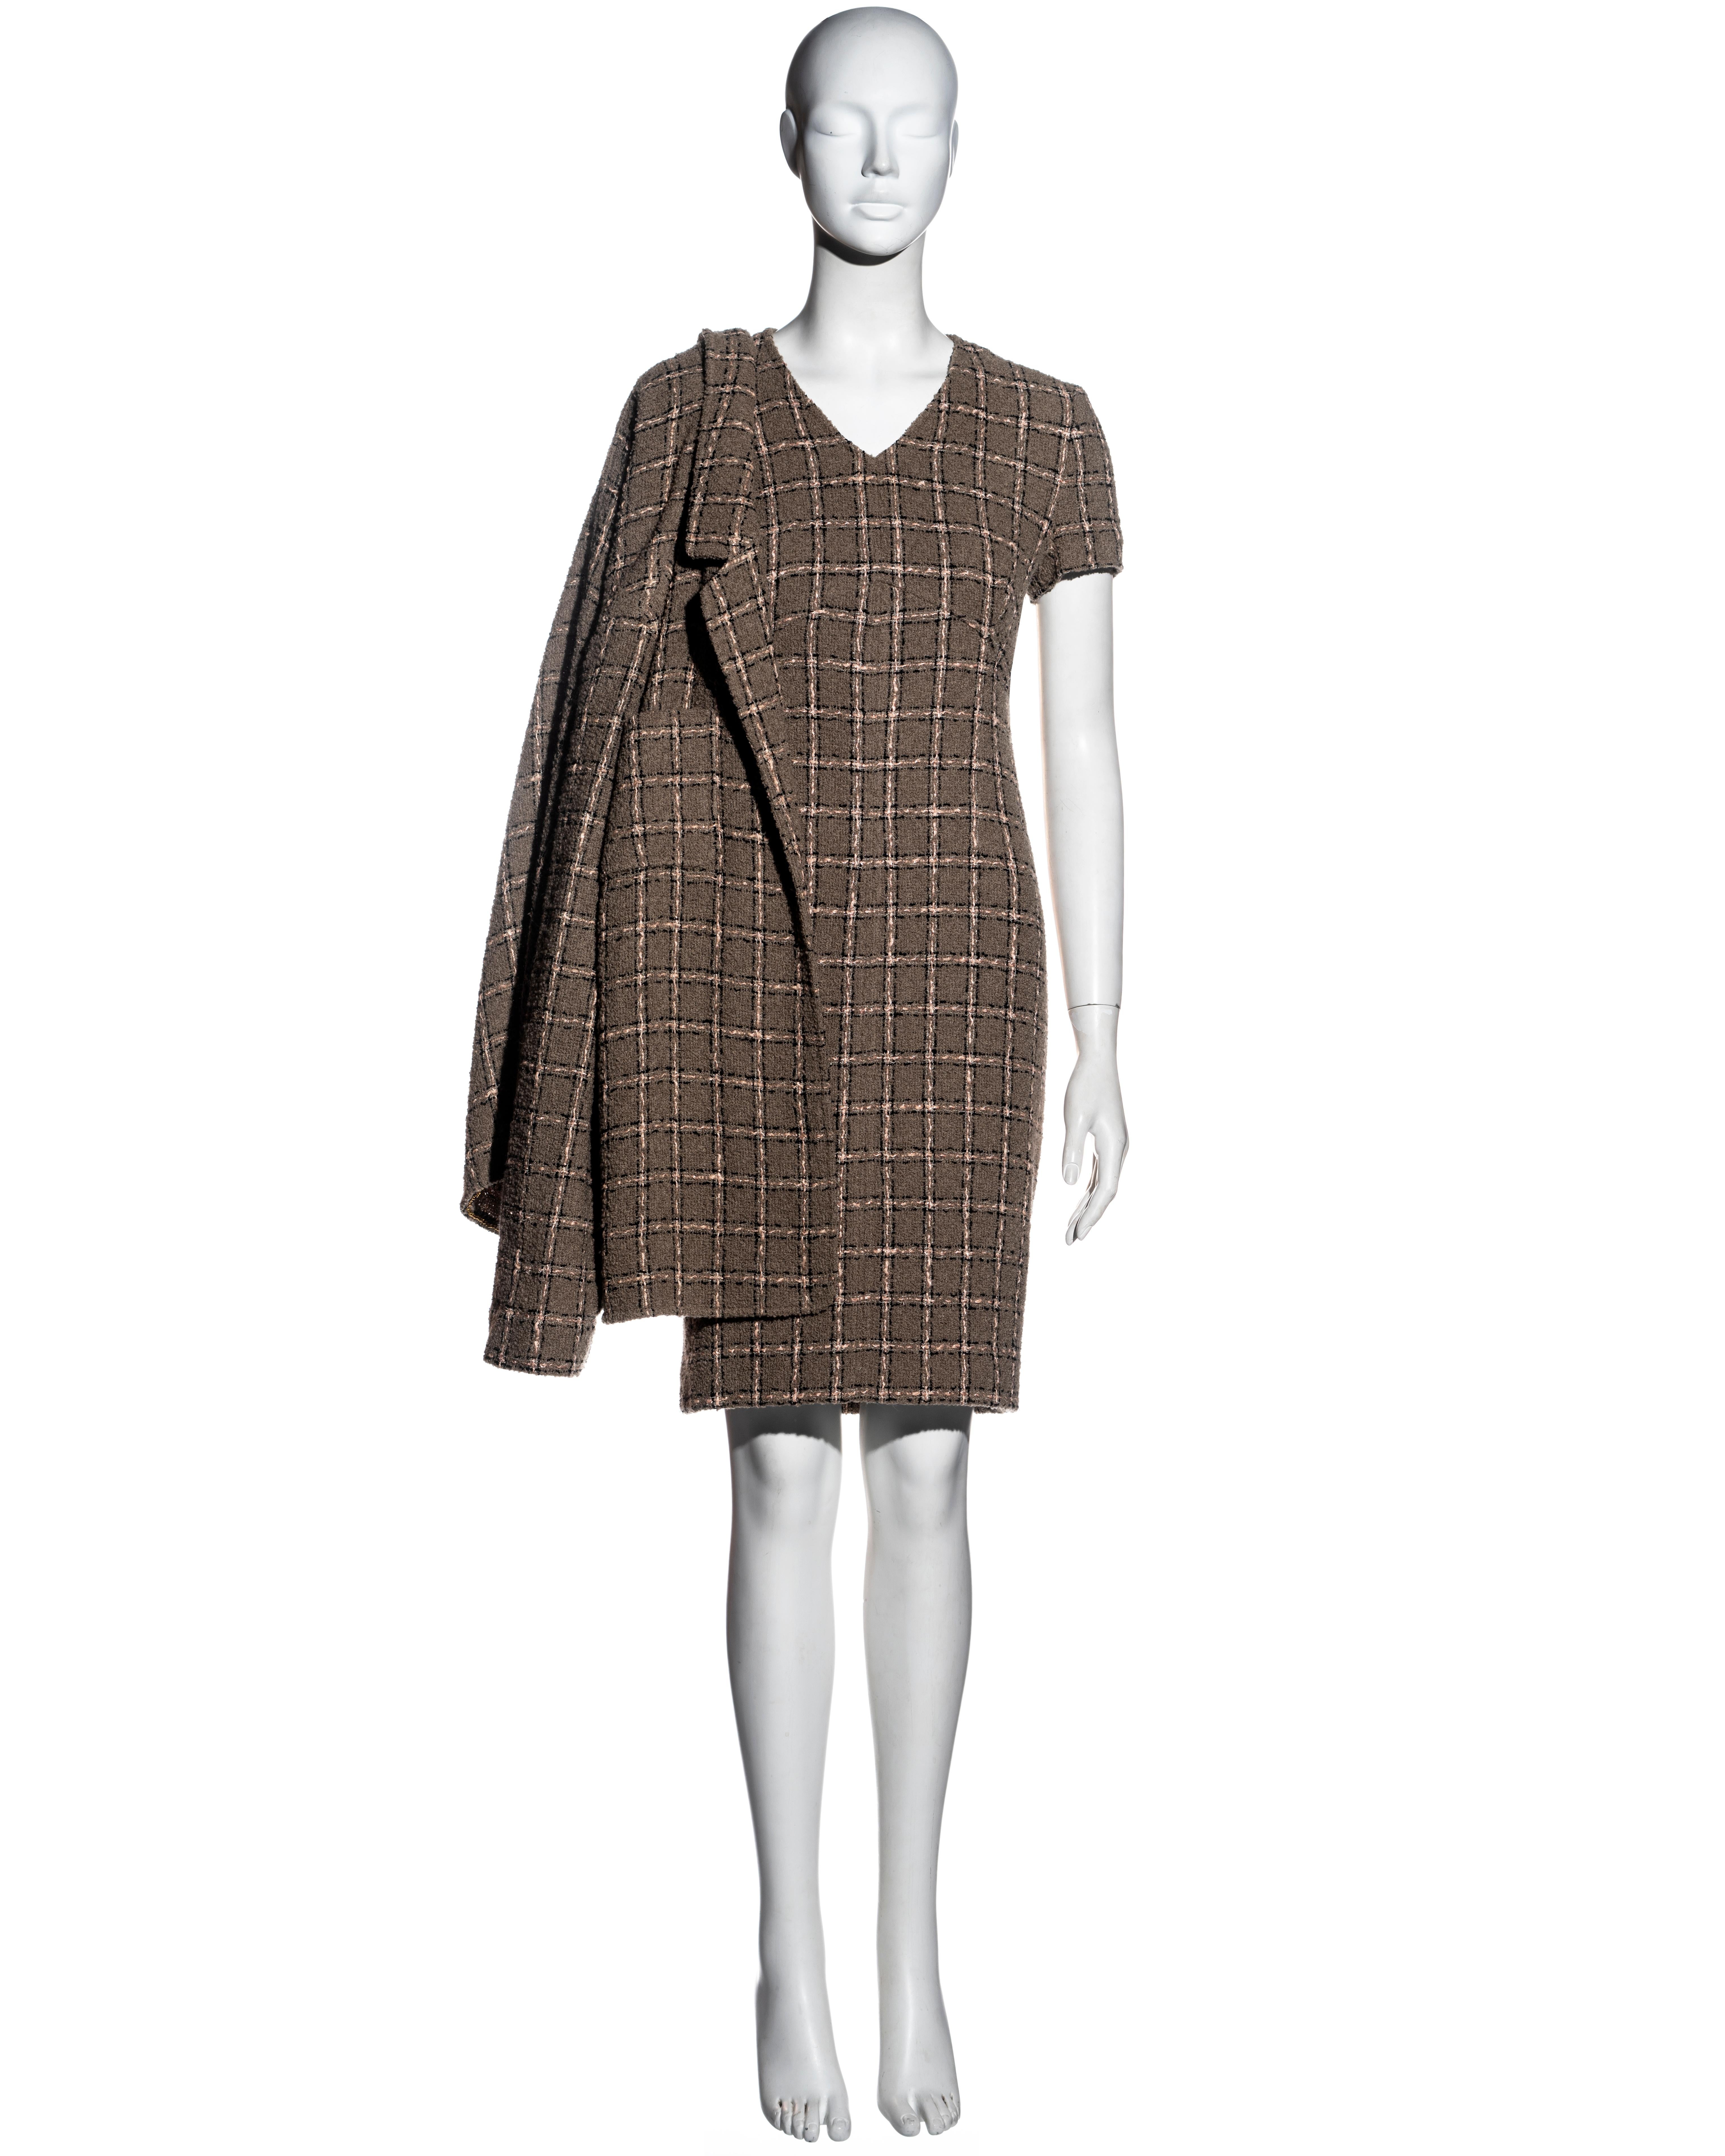 Ensemble robe et veste en laine bouclée taupe à carreaux, Chanel by Karl Lagerfeld, fw 1995 Pour femmes en vente